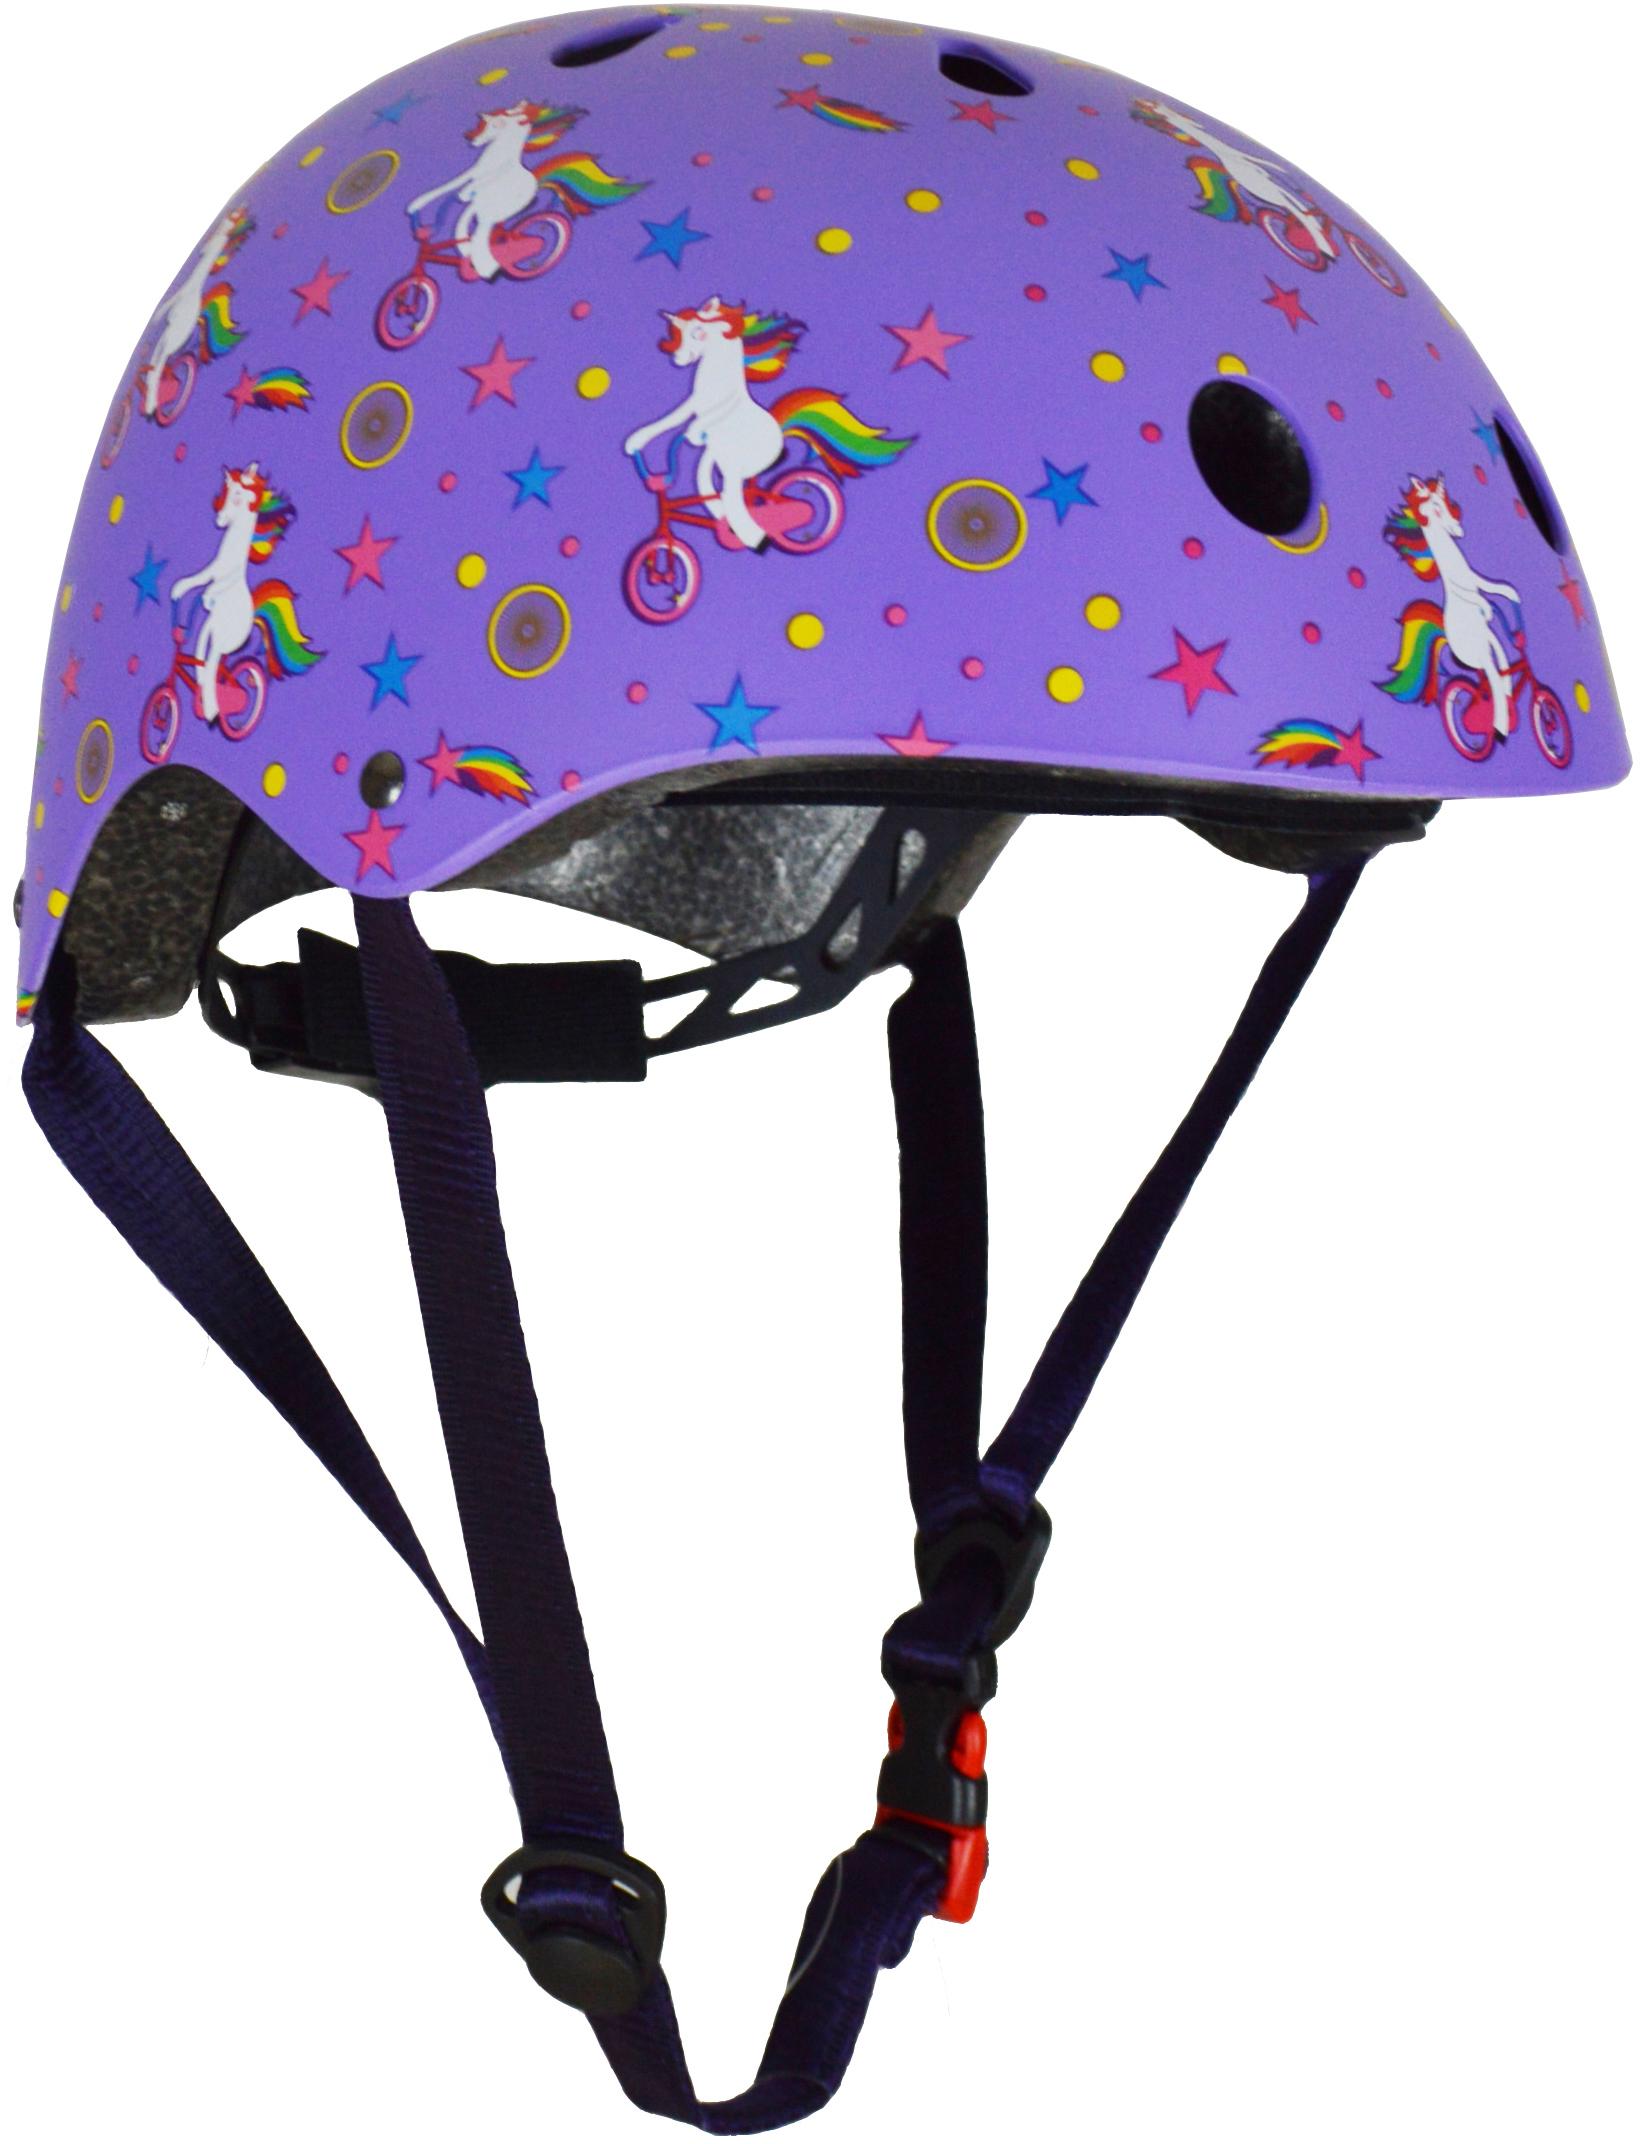 Kiddimoto Unicorn Helmet Medium